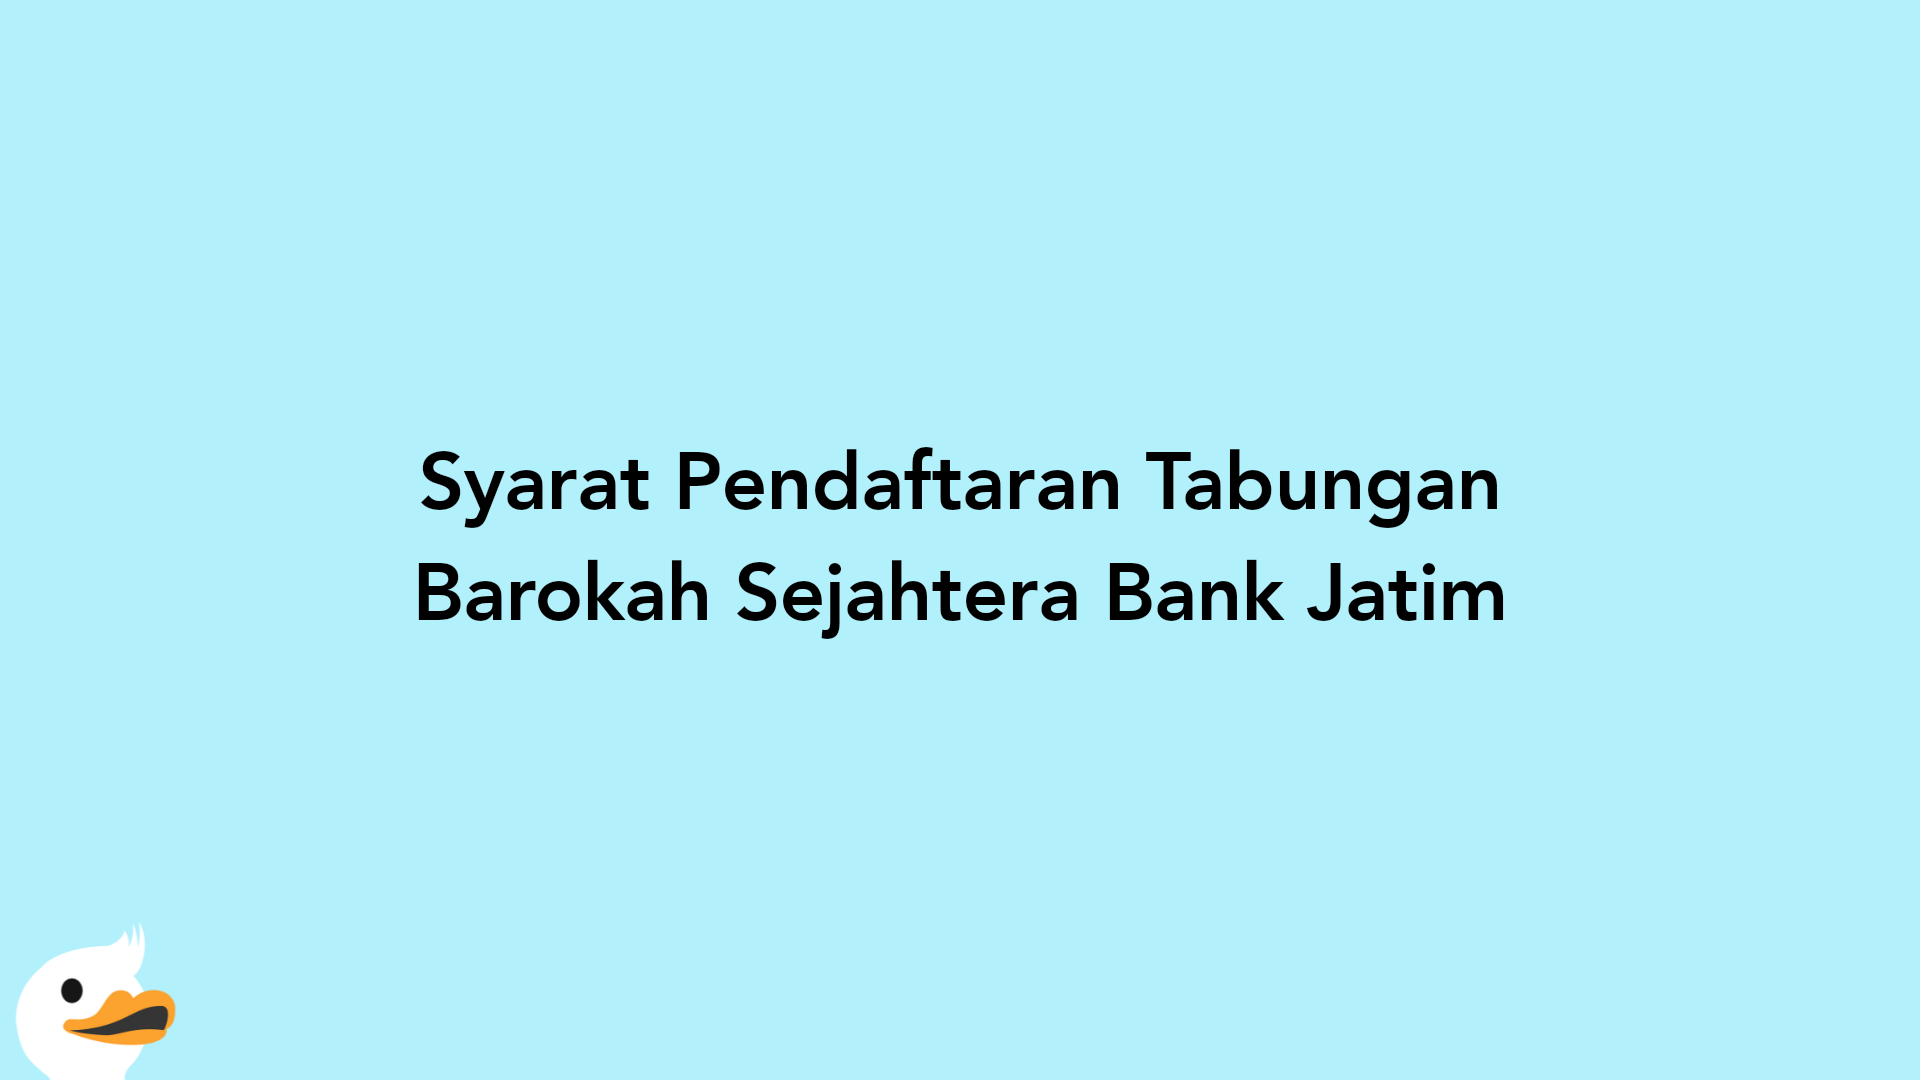 Syarat Pendaftaran Tabungan Barokah Sejahtera Bank Jatim